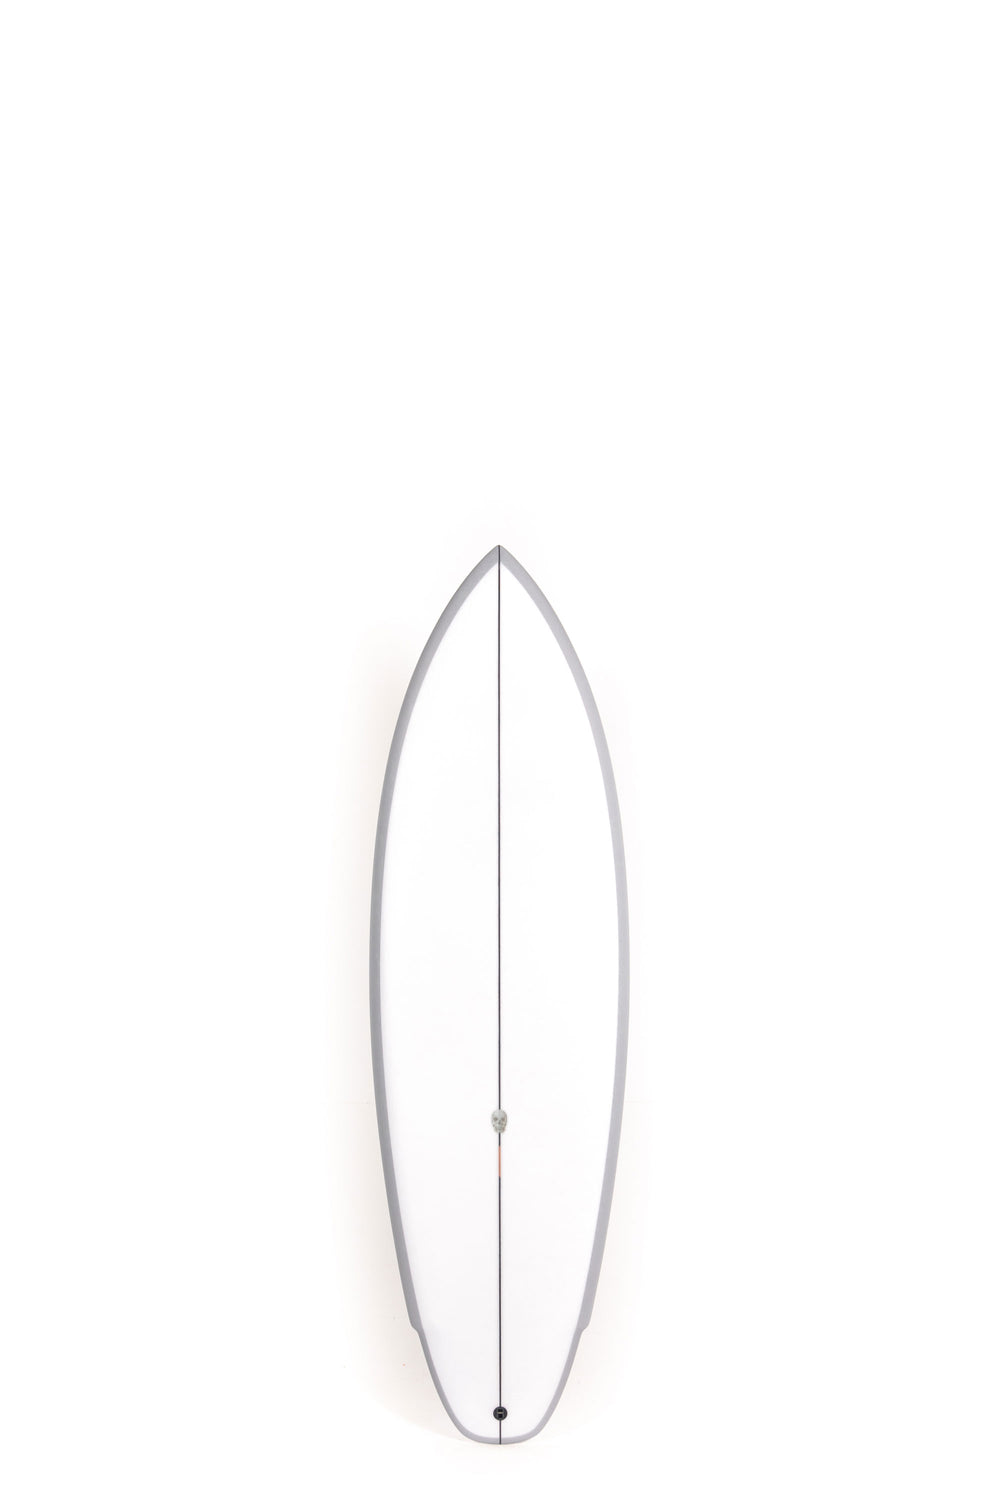 Christenson Surfboards - LANE SPLITTER - 5'7